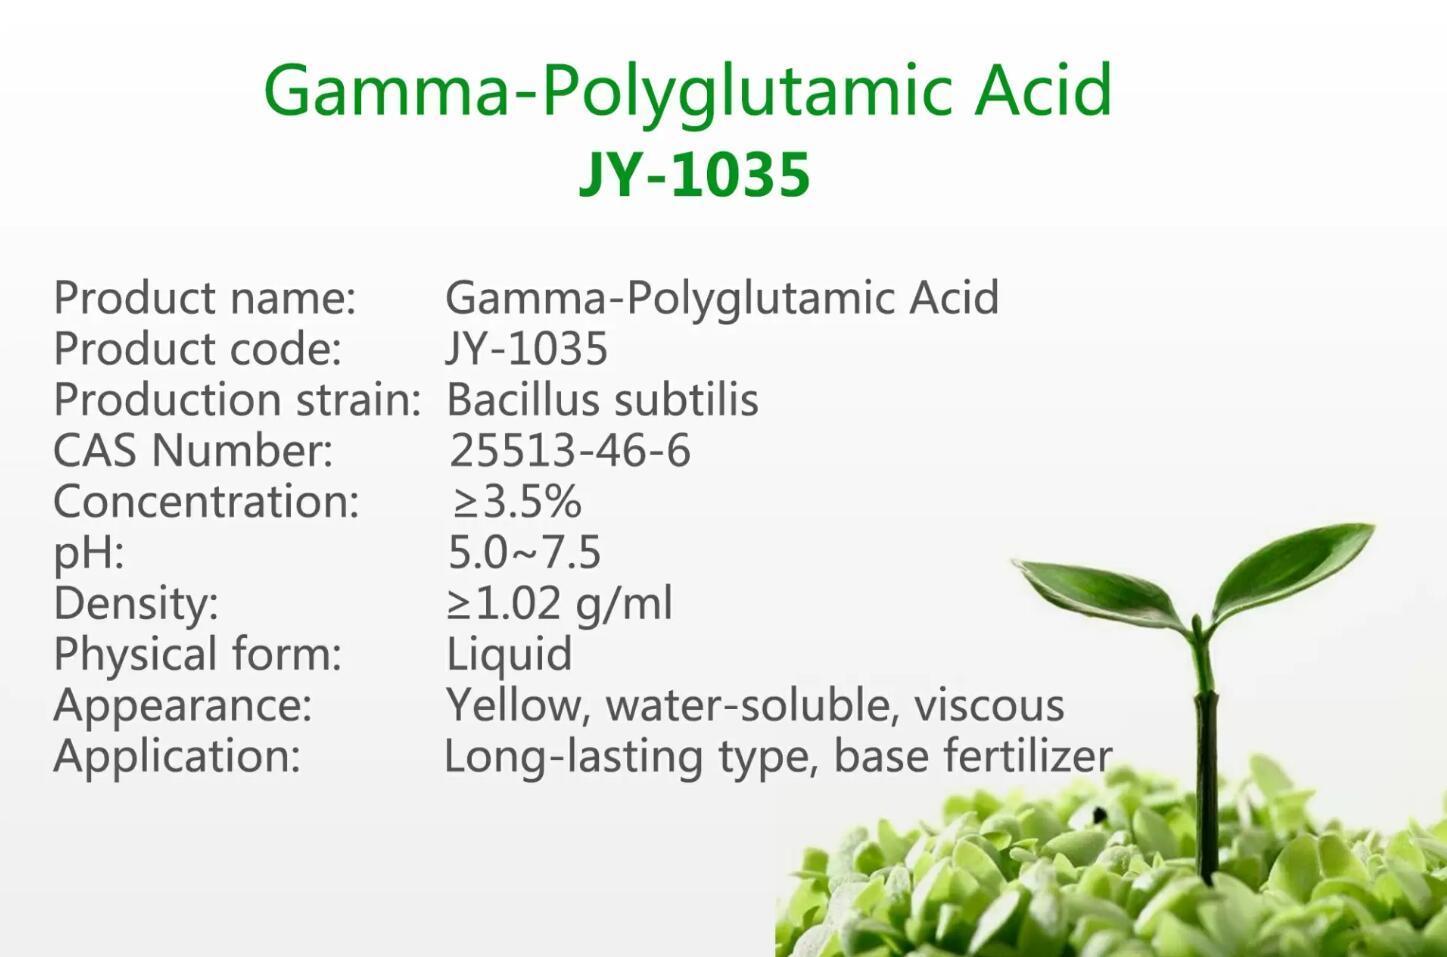 γ-Polyglutamic Acid JY-1035 on sales